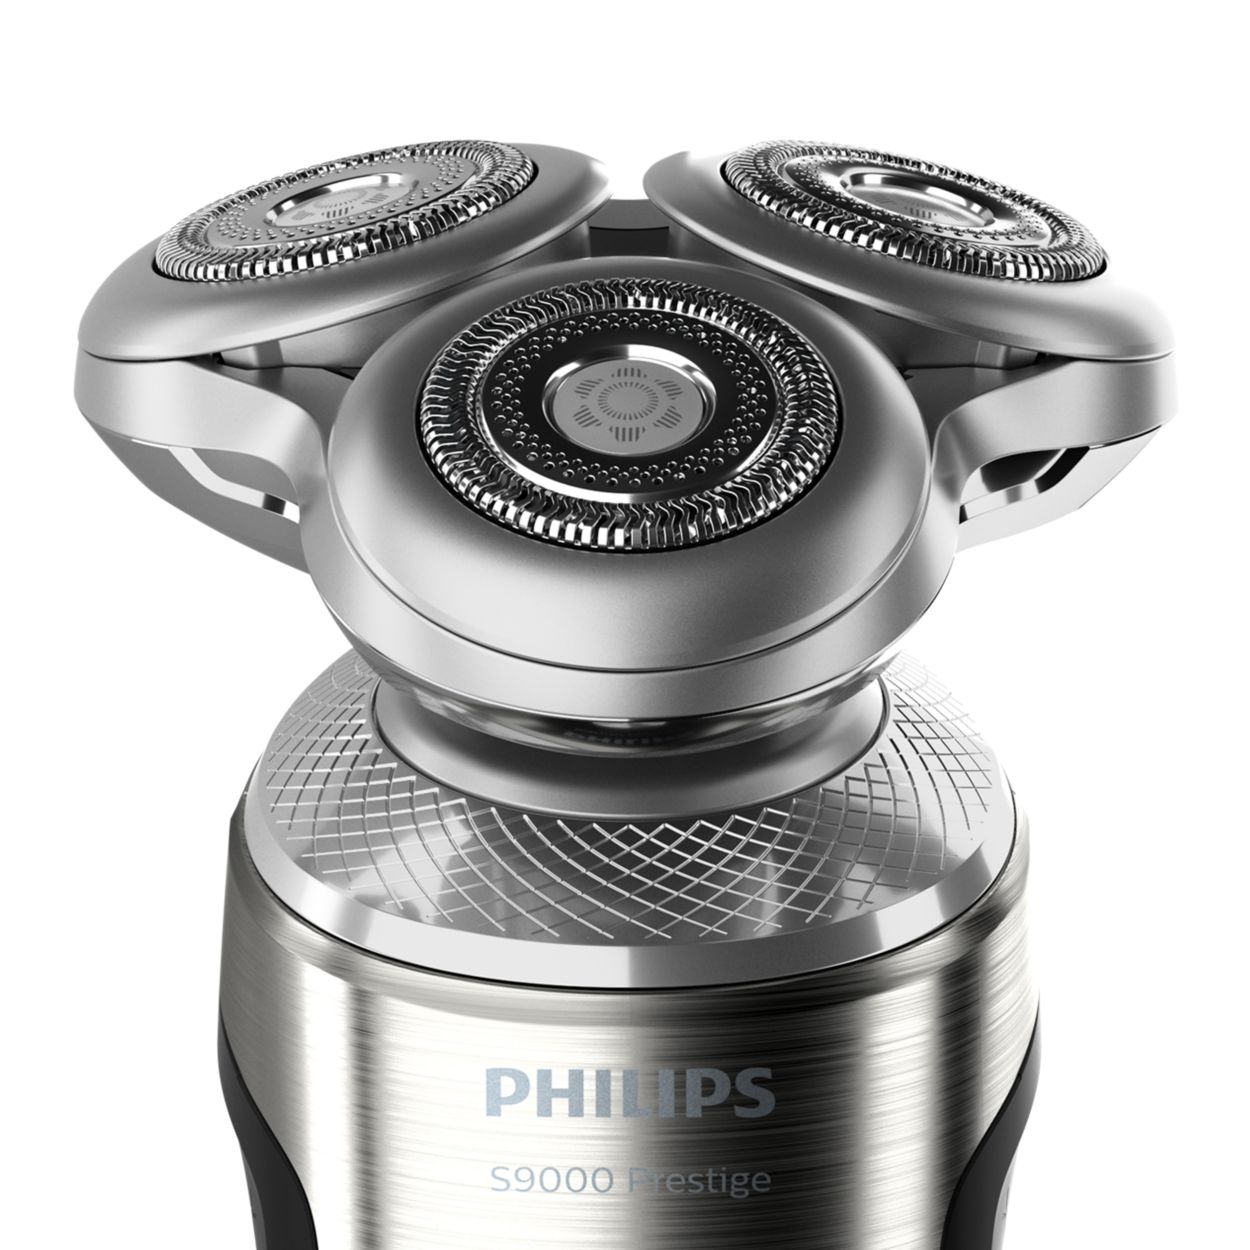 フィリップス PHILIPS S9000 Prestige SP9820/12